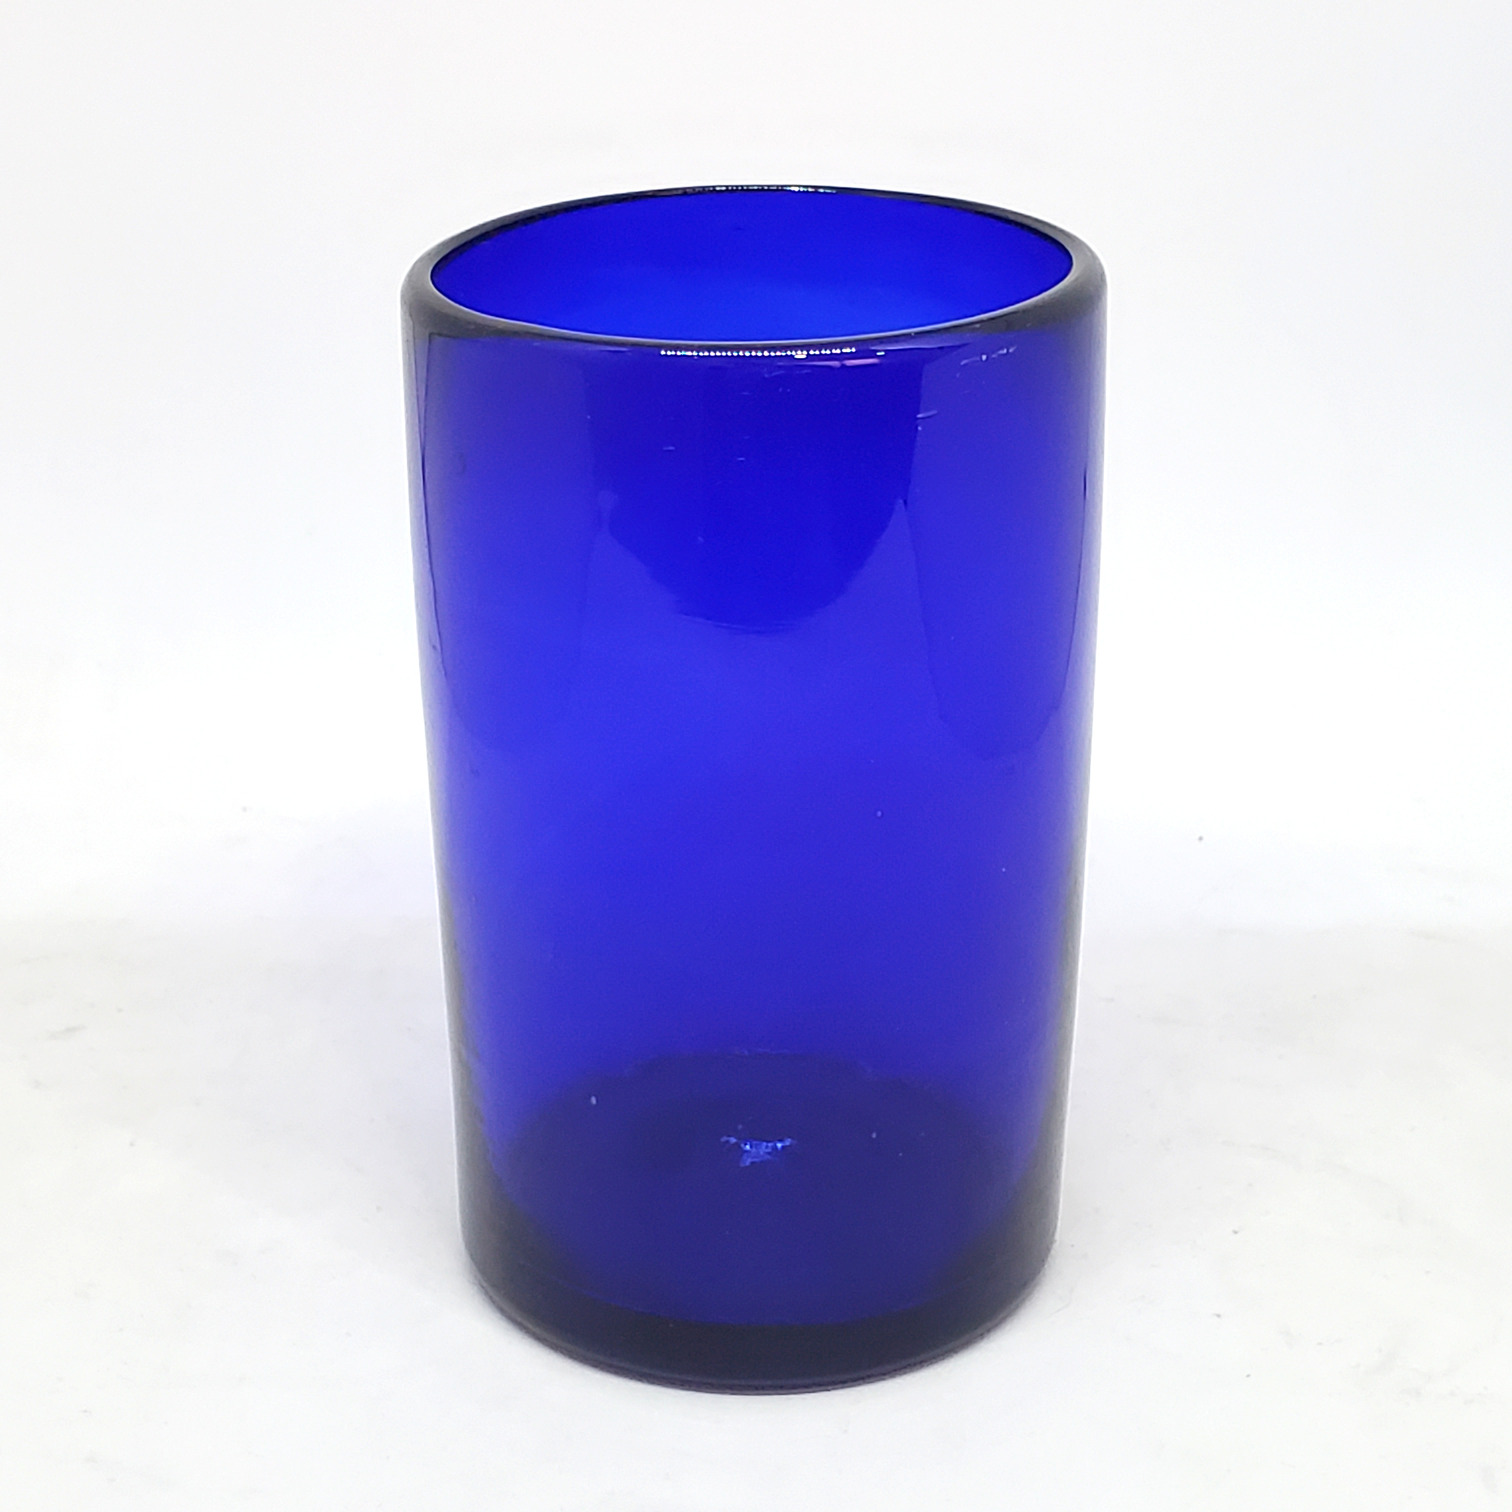 VIDRIO SOPLADO al Mayoreo / vasos grandes color azul cobalto / Éstos artesanales vasos le darán un toque clásico a su bebida favorita.